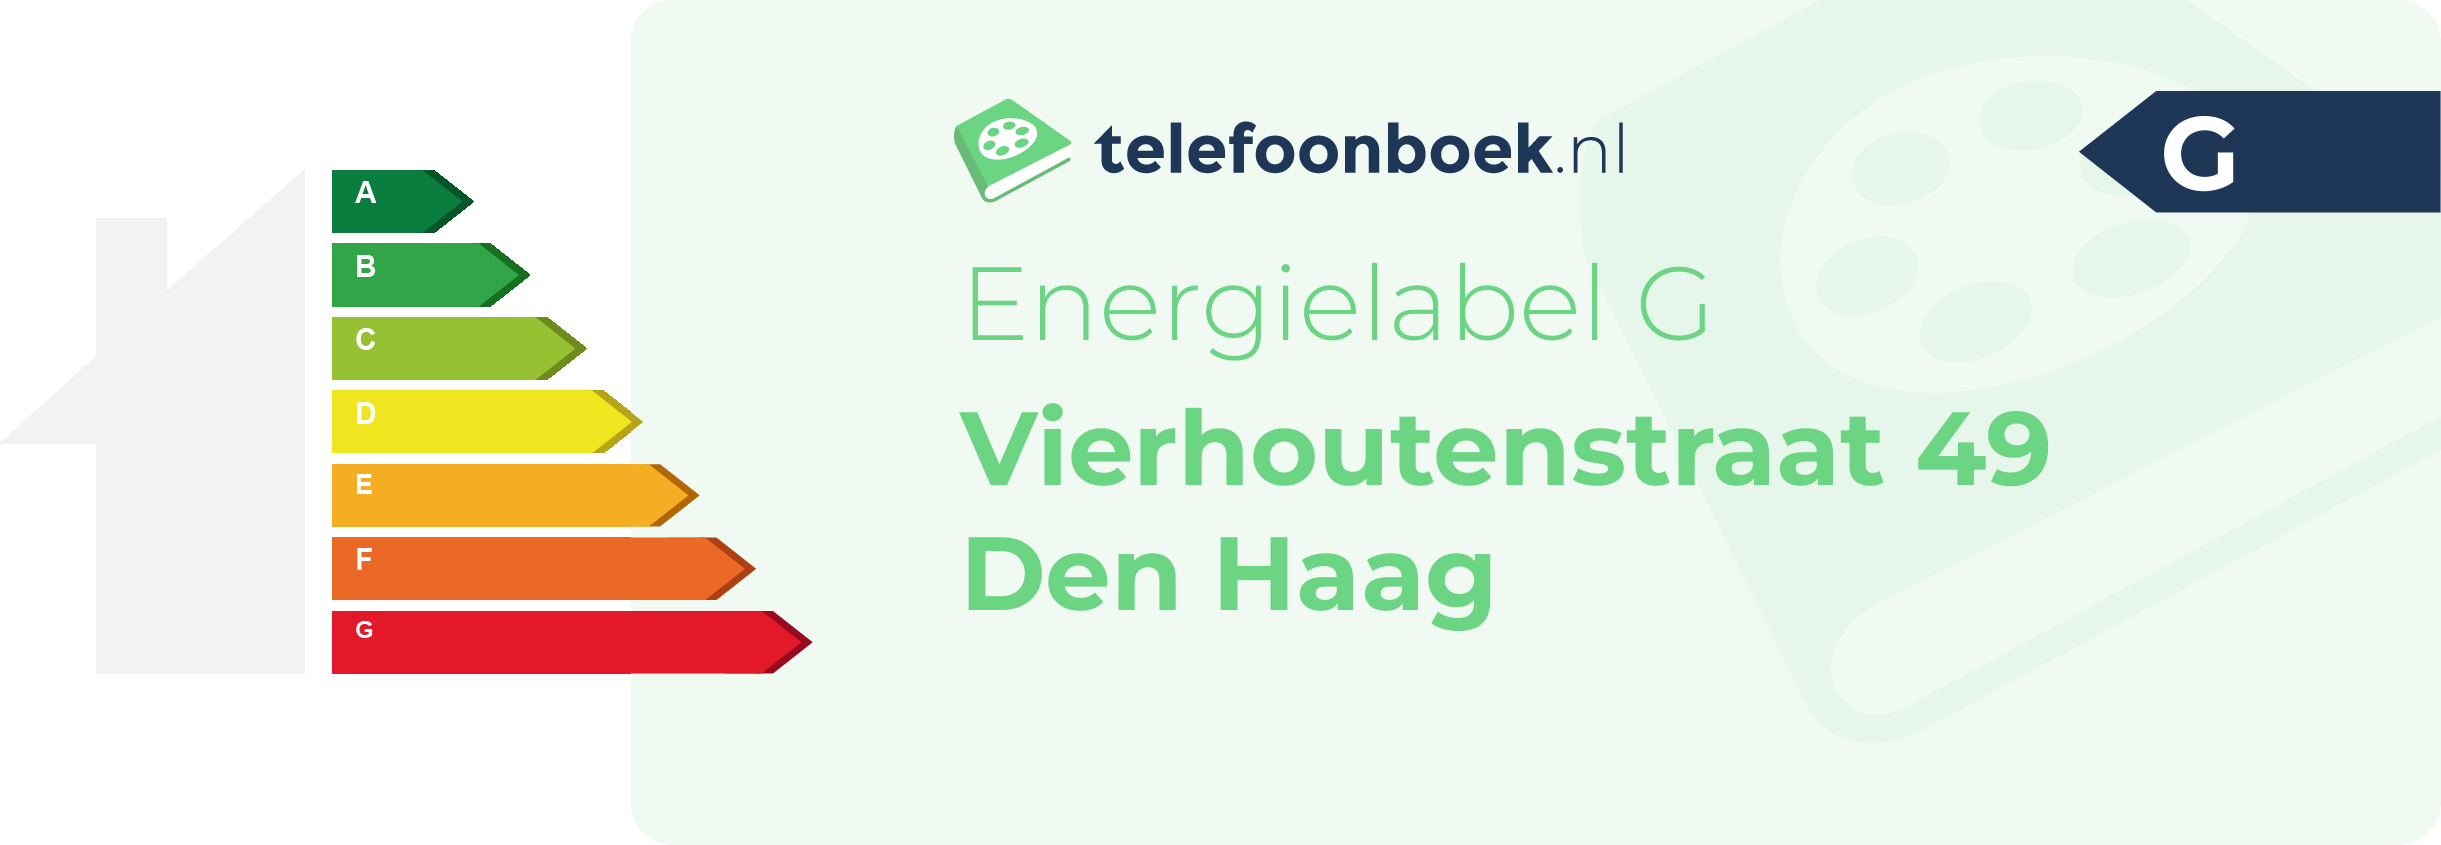 Energielabel Vierhoutenstraat 49 Den Haag